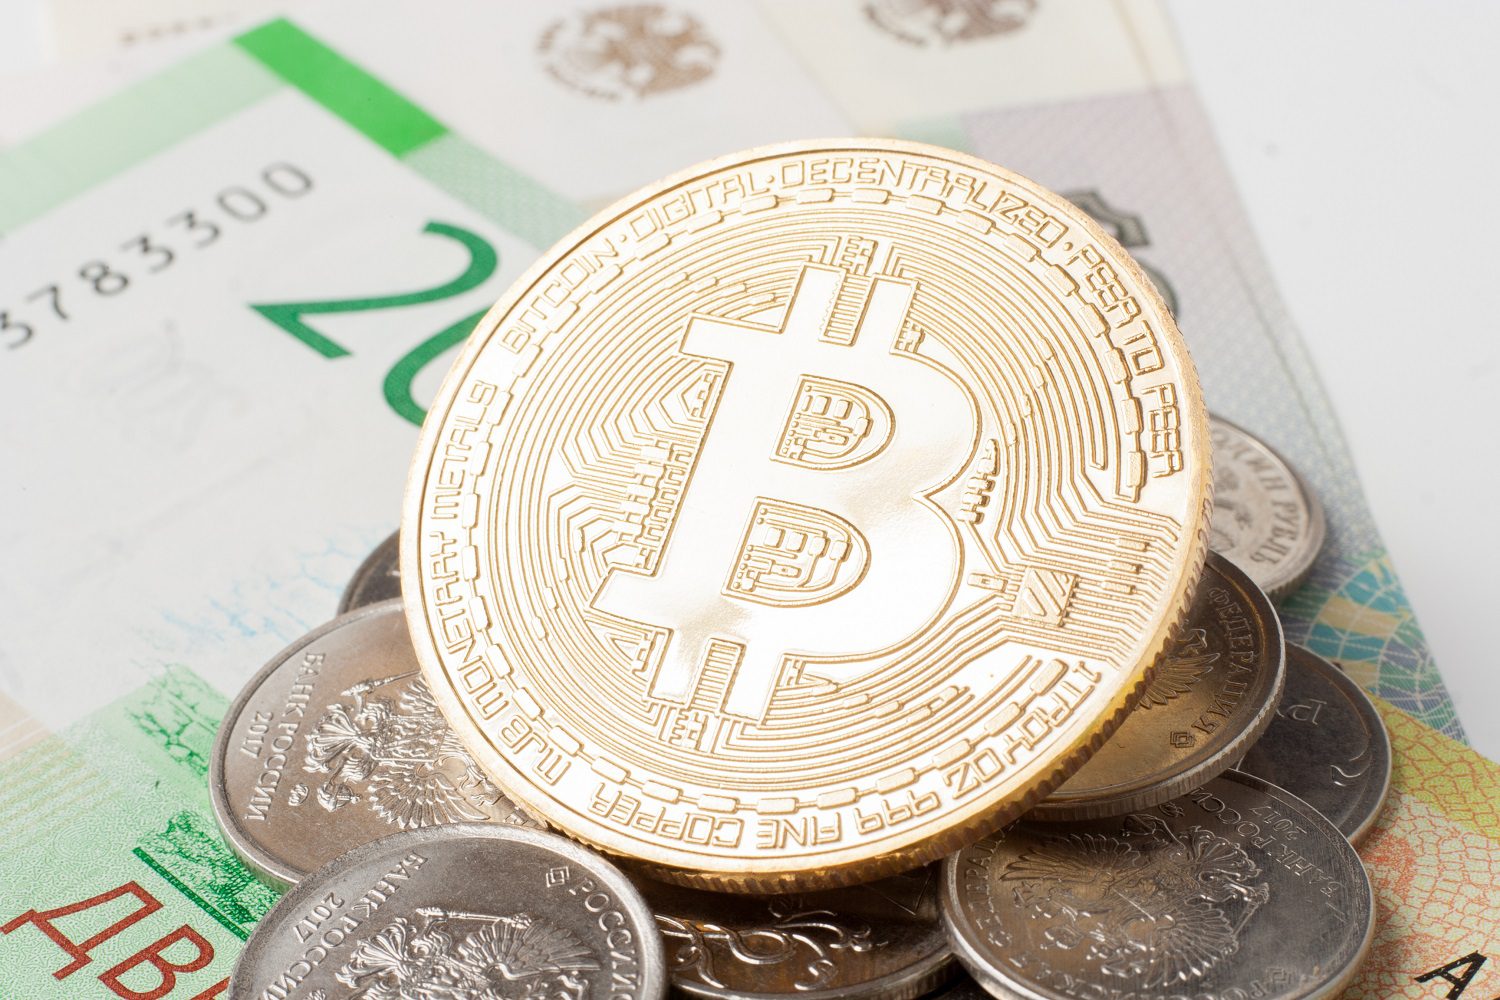 Una ficha de metal destinada a representar a Bitcoin se encuentra encima de una pila de monedas fiduciarias y billetes rusos.